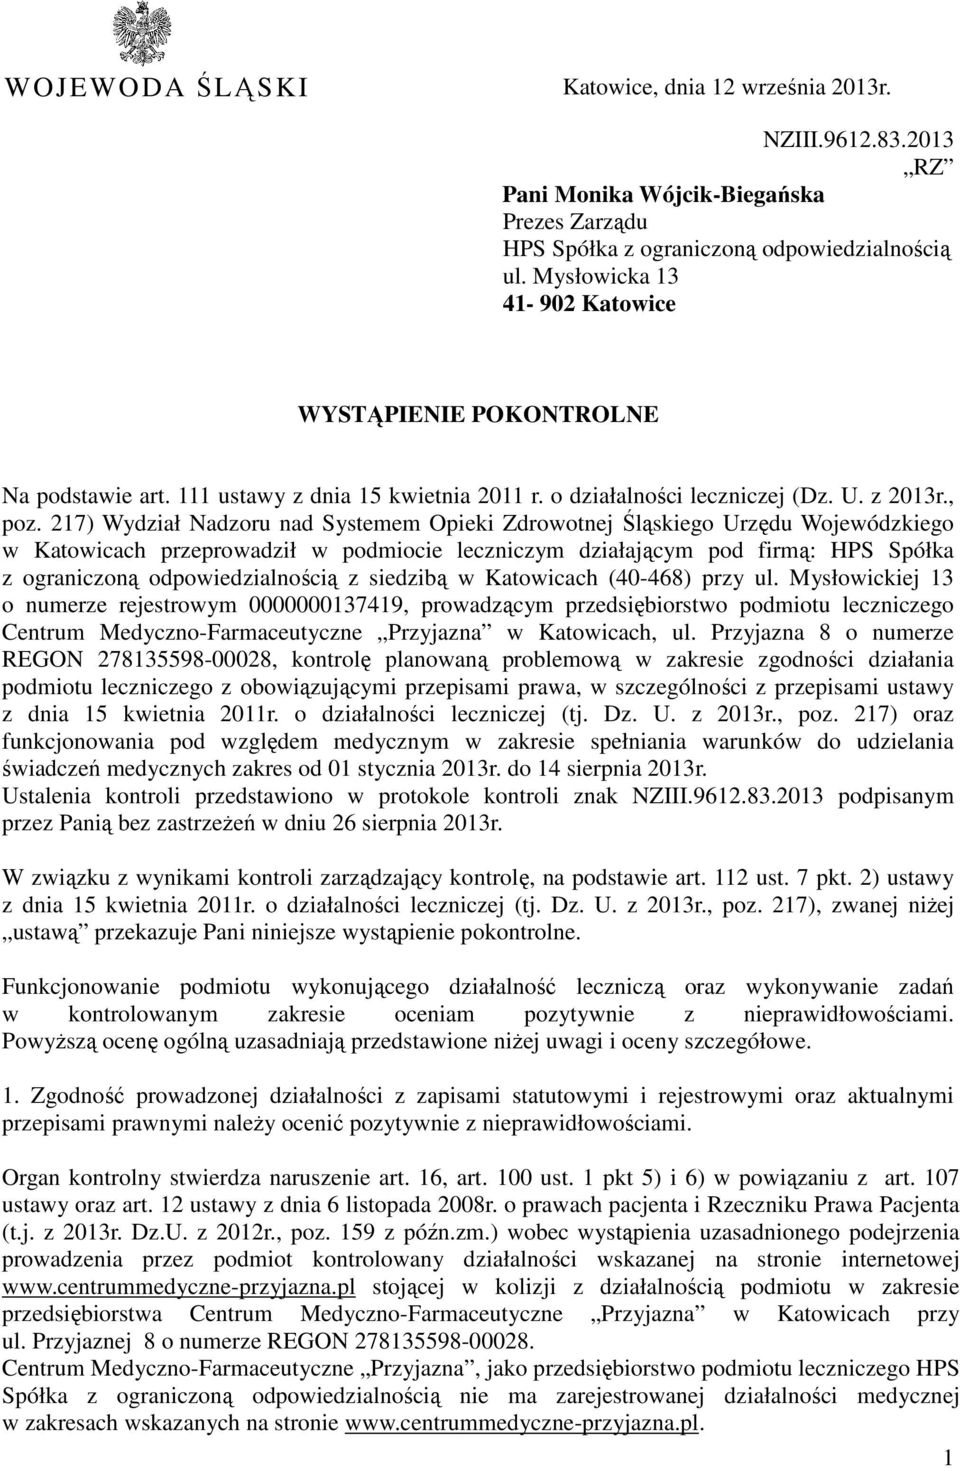 217) Wydział Nadzoru nad Systemem Opieki Zdrowotnej Śląskiego Urzędu Wojewódzkiego w Katowicach przeprowadził w podmiocie leczniczym działającym pod firmą: HPS Spółka z ograniczoną odpowiedzialnością